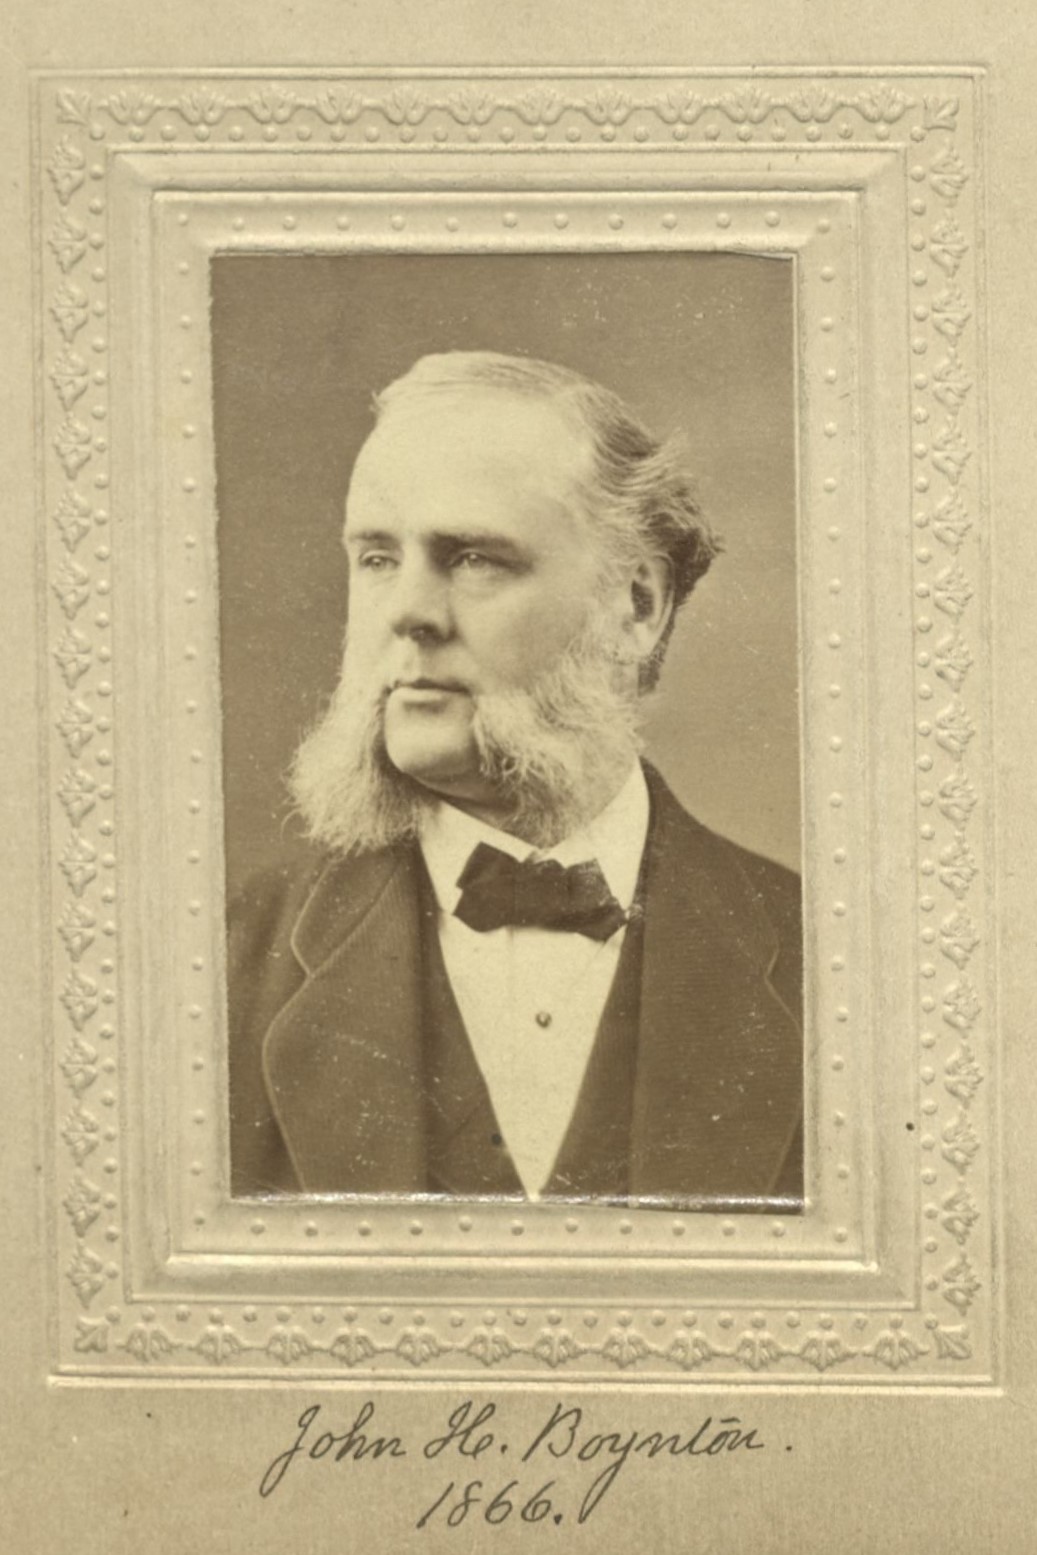 Member portrait of John H. Boynton